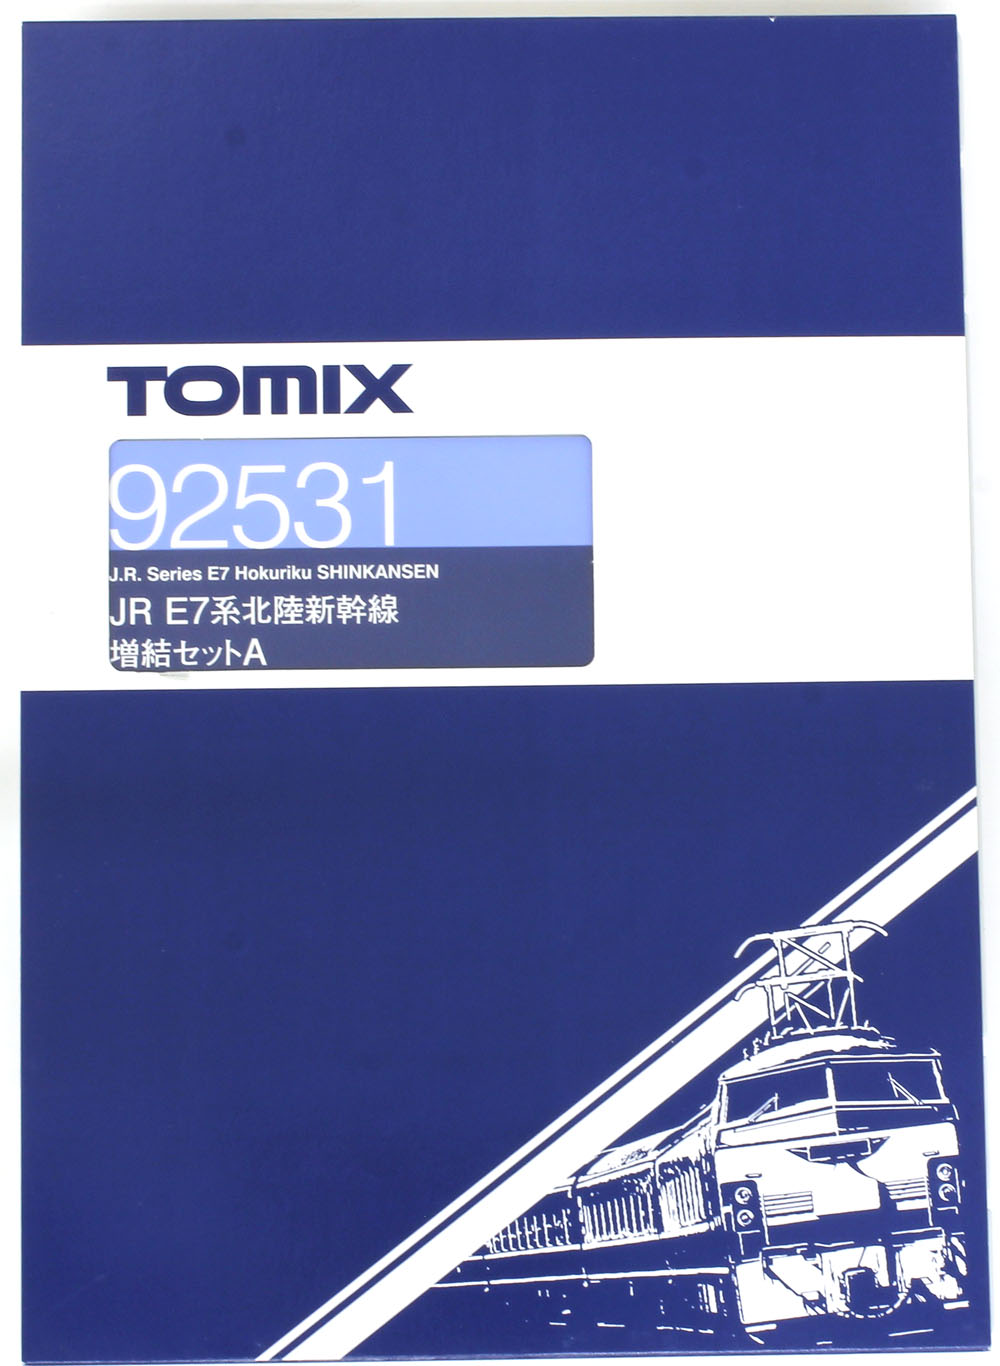 E7系北陸新幹線 増結6両セットB 【TOMIX・92532】「鉄道模型 Nゲージ トミックス」 | ミッドナイン